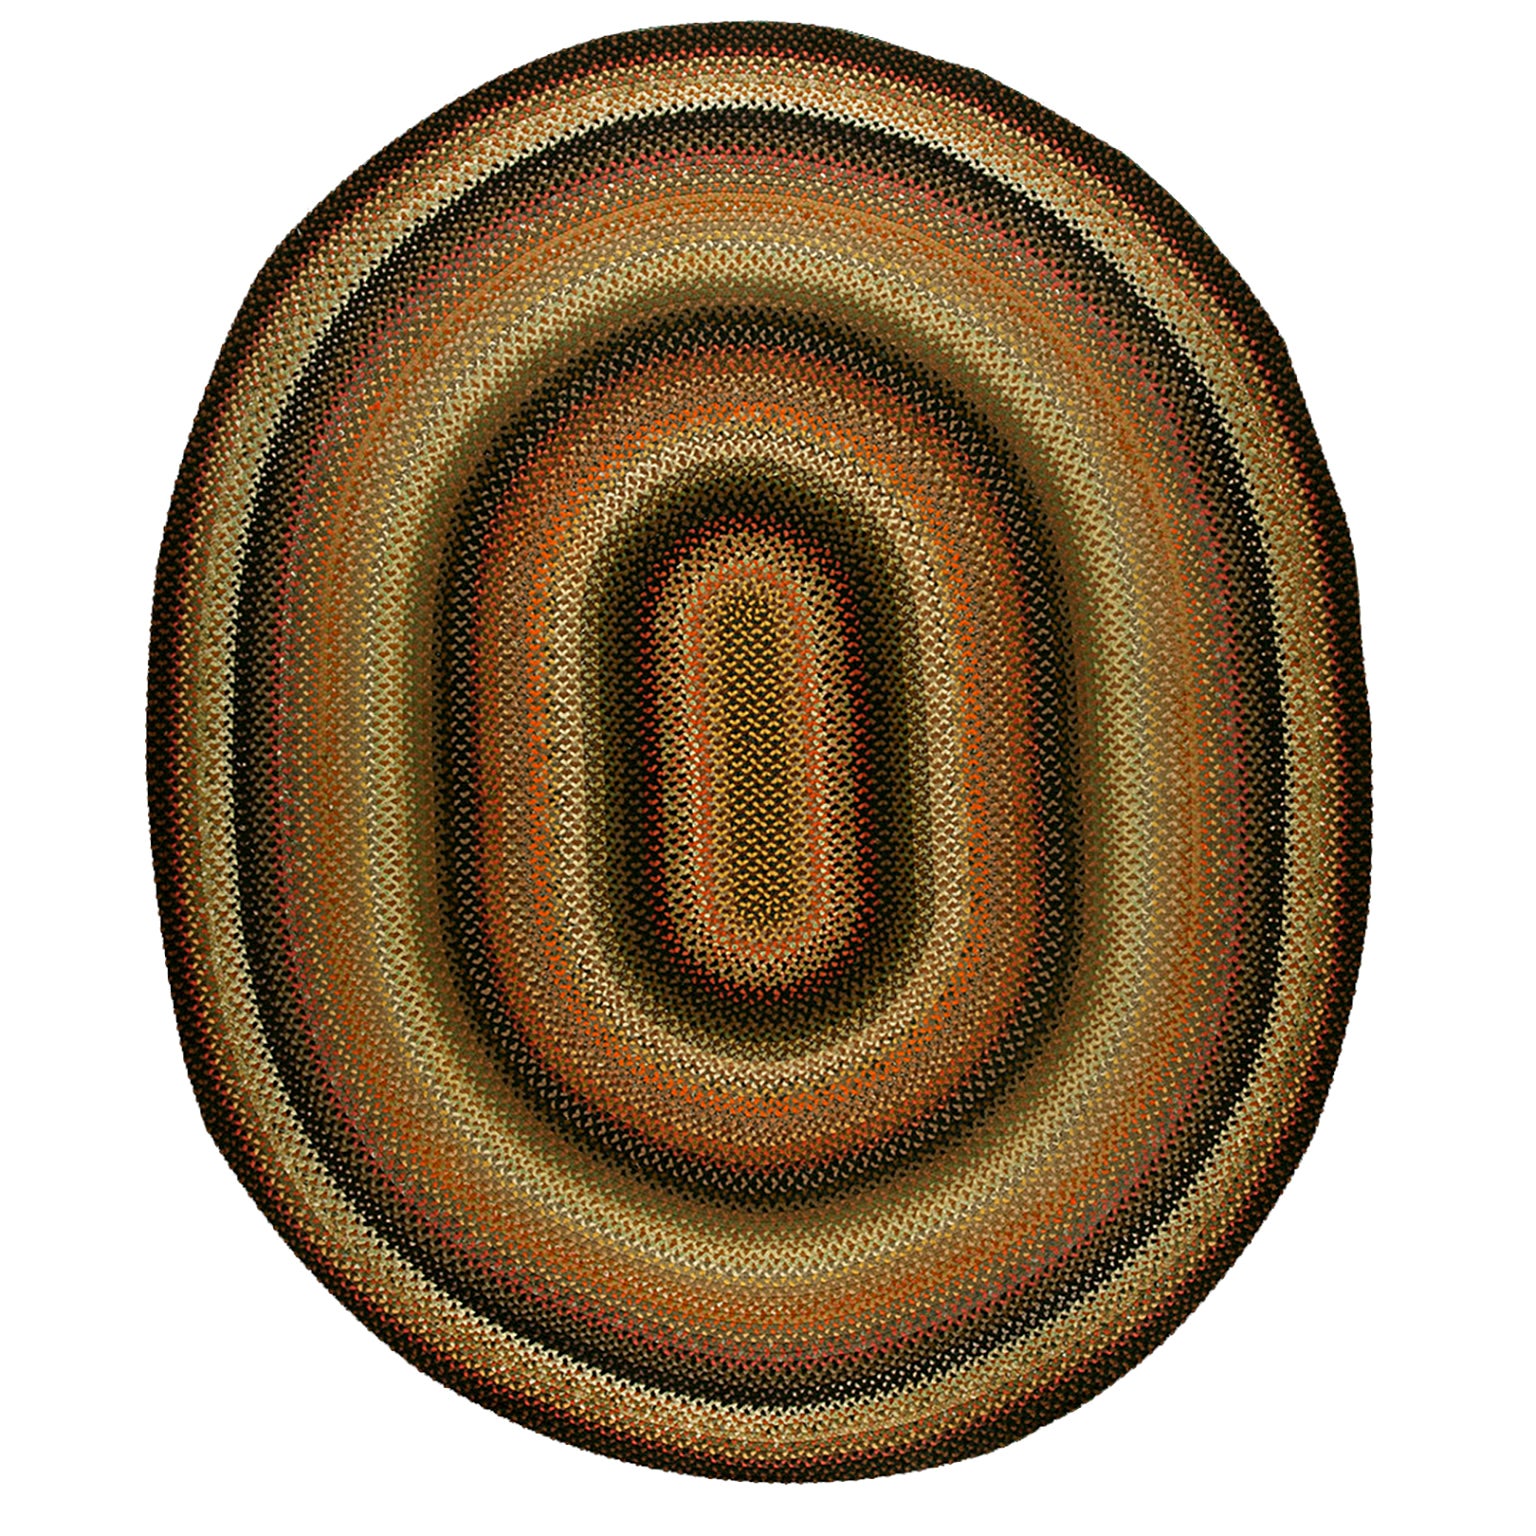 Amerikanischer geflochtener Teppich aus den 1930er Jahren ( 9''10 x 11''10 - 300 x 360)